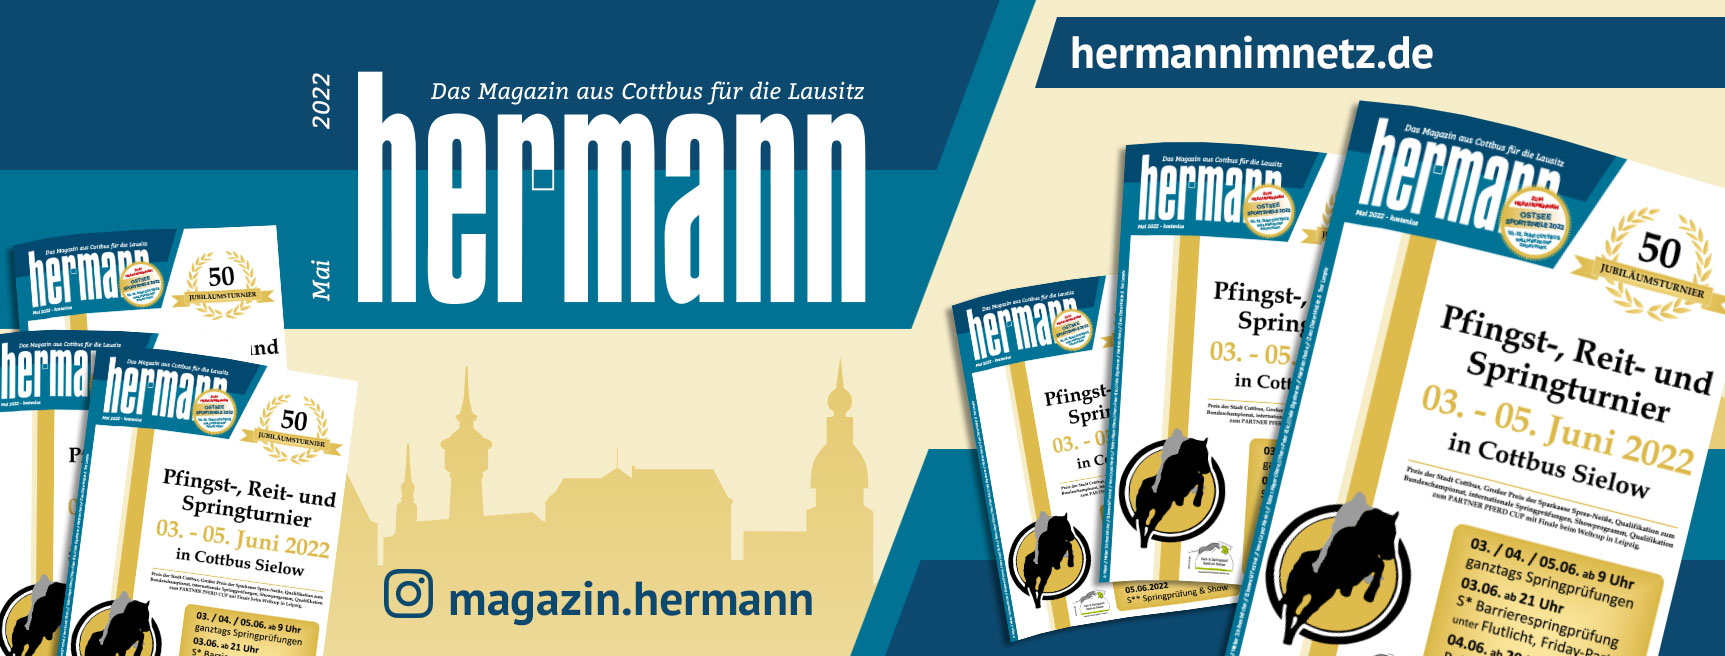 Hermann im Netz